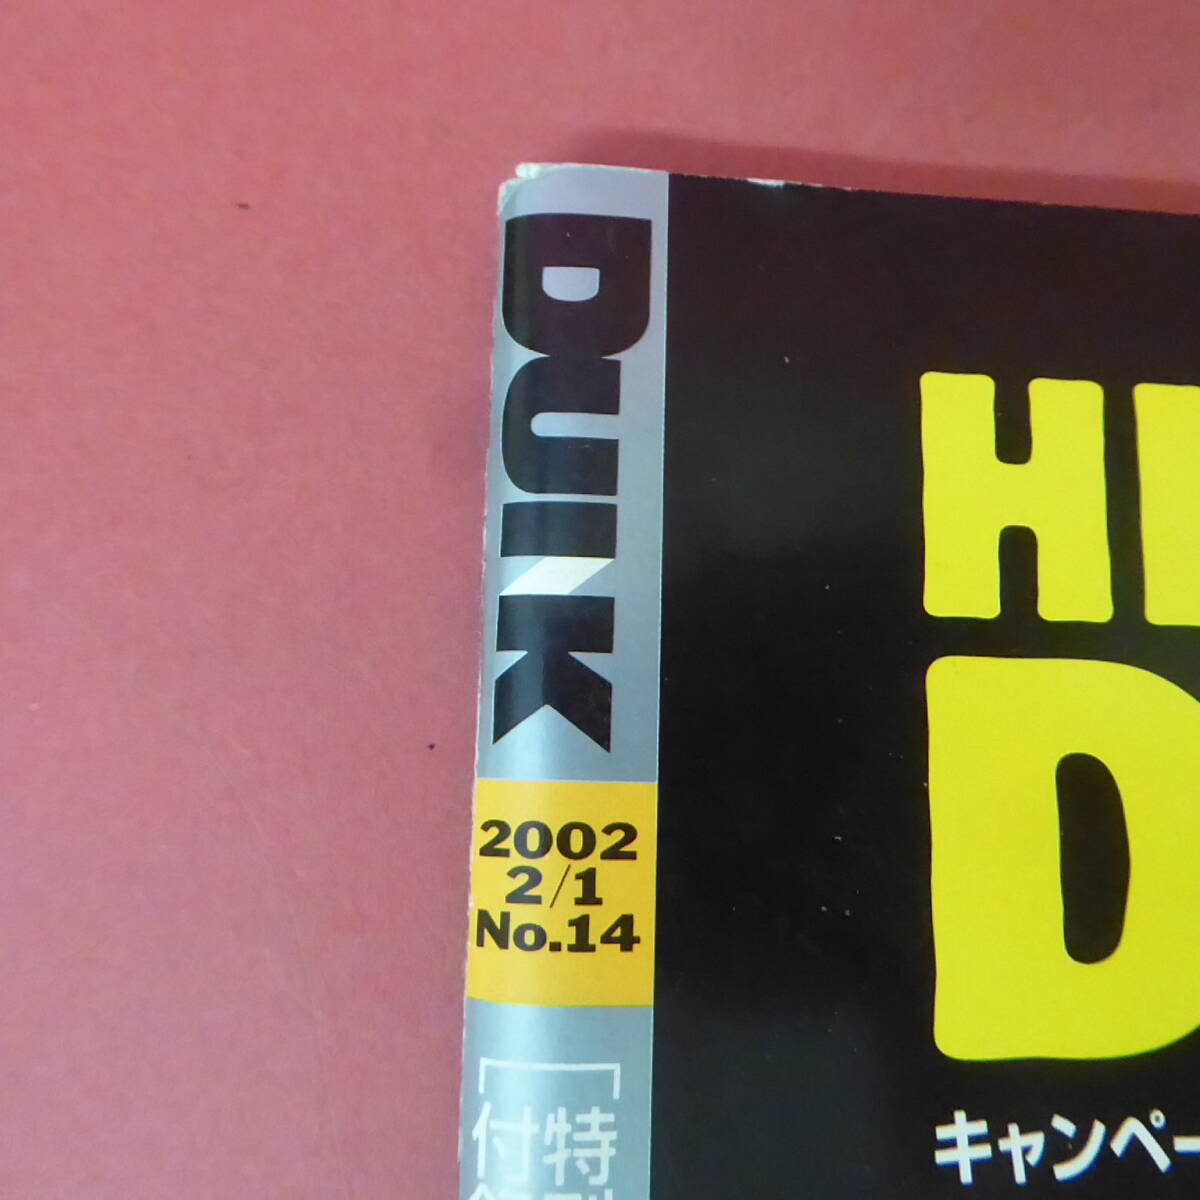 YN3-240410A*DUNK Dunk Duet больше .2002.2/1 Komukai Minako карта нет Nagasawa Masami 